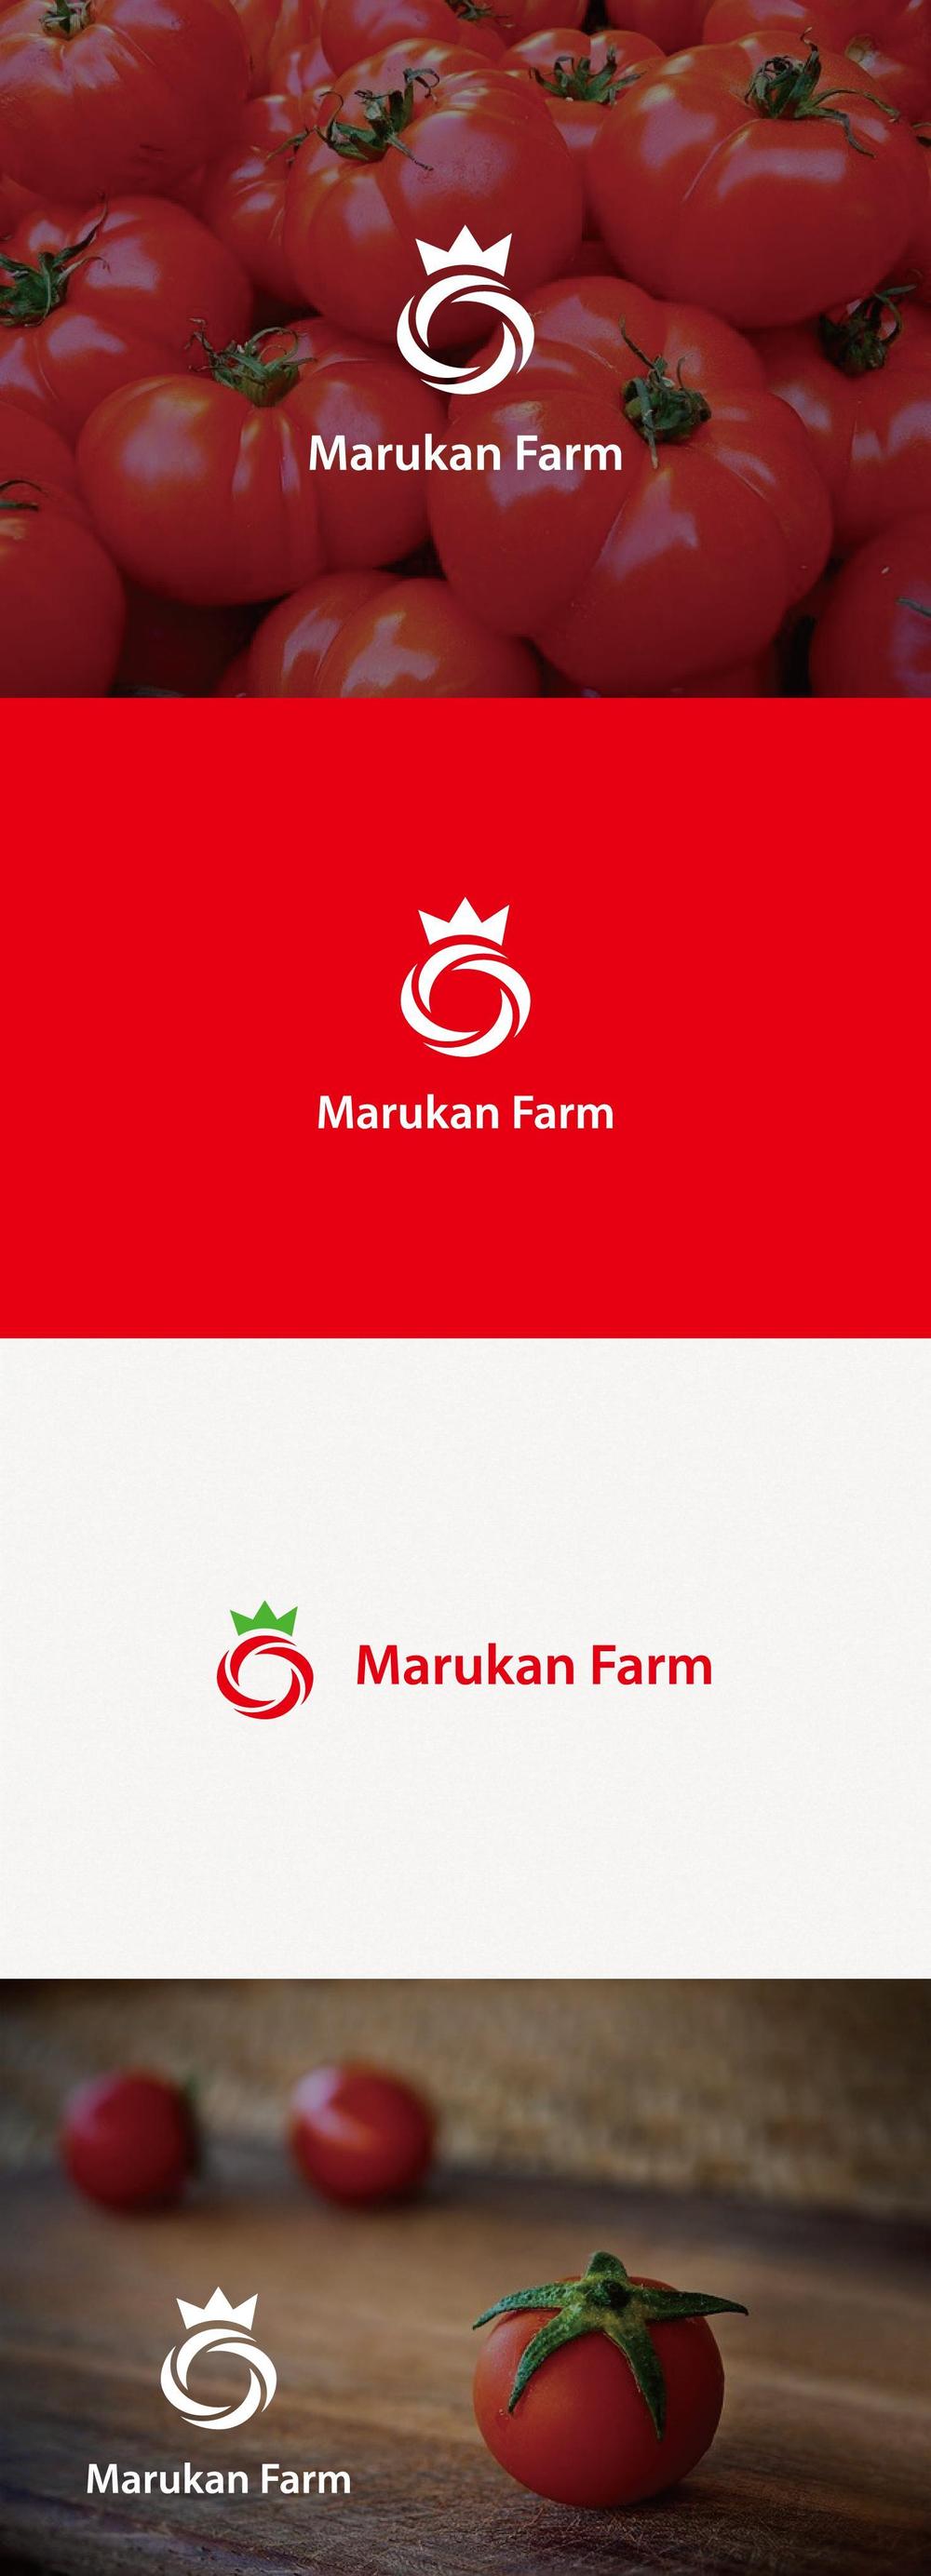 トマトの化粧箱に貼るシール マルカン農園のロゴ